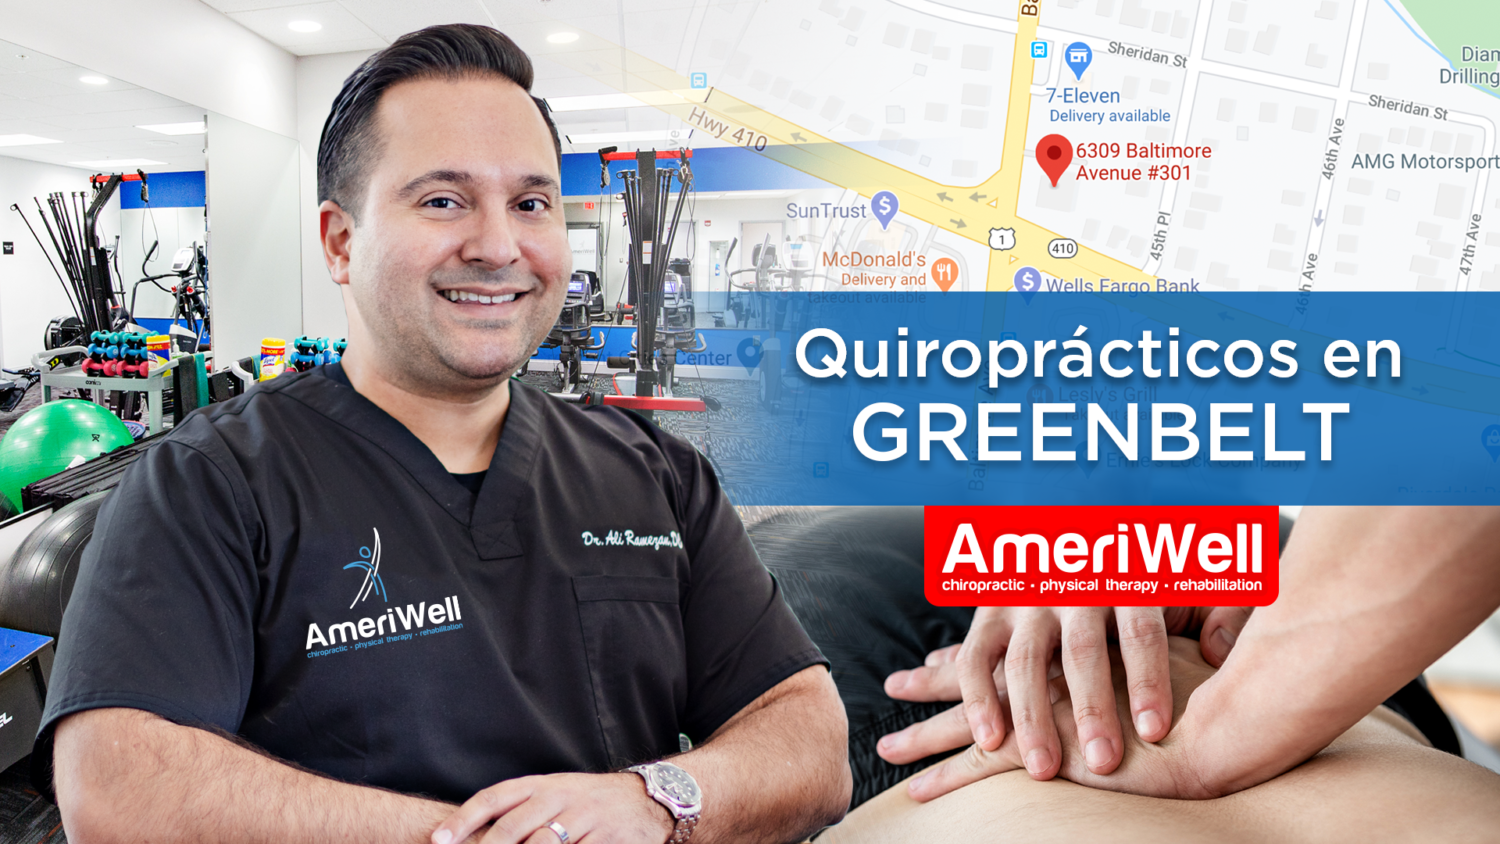 Greenbelt - Ameriwell Clinics los mejores Quiroprácticos